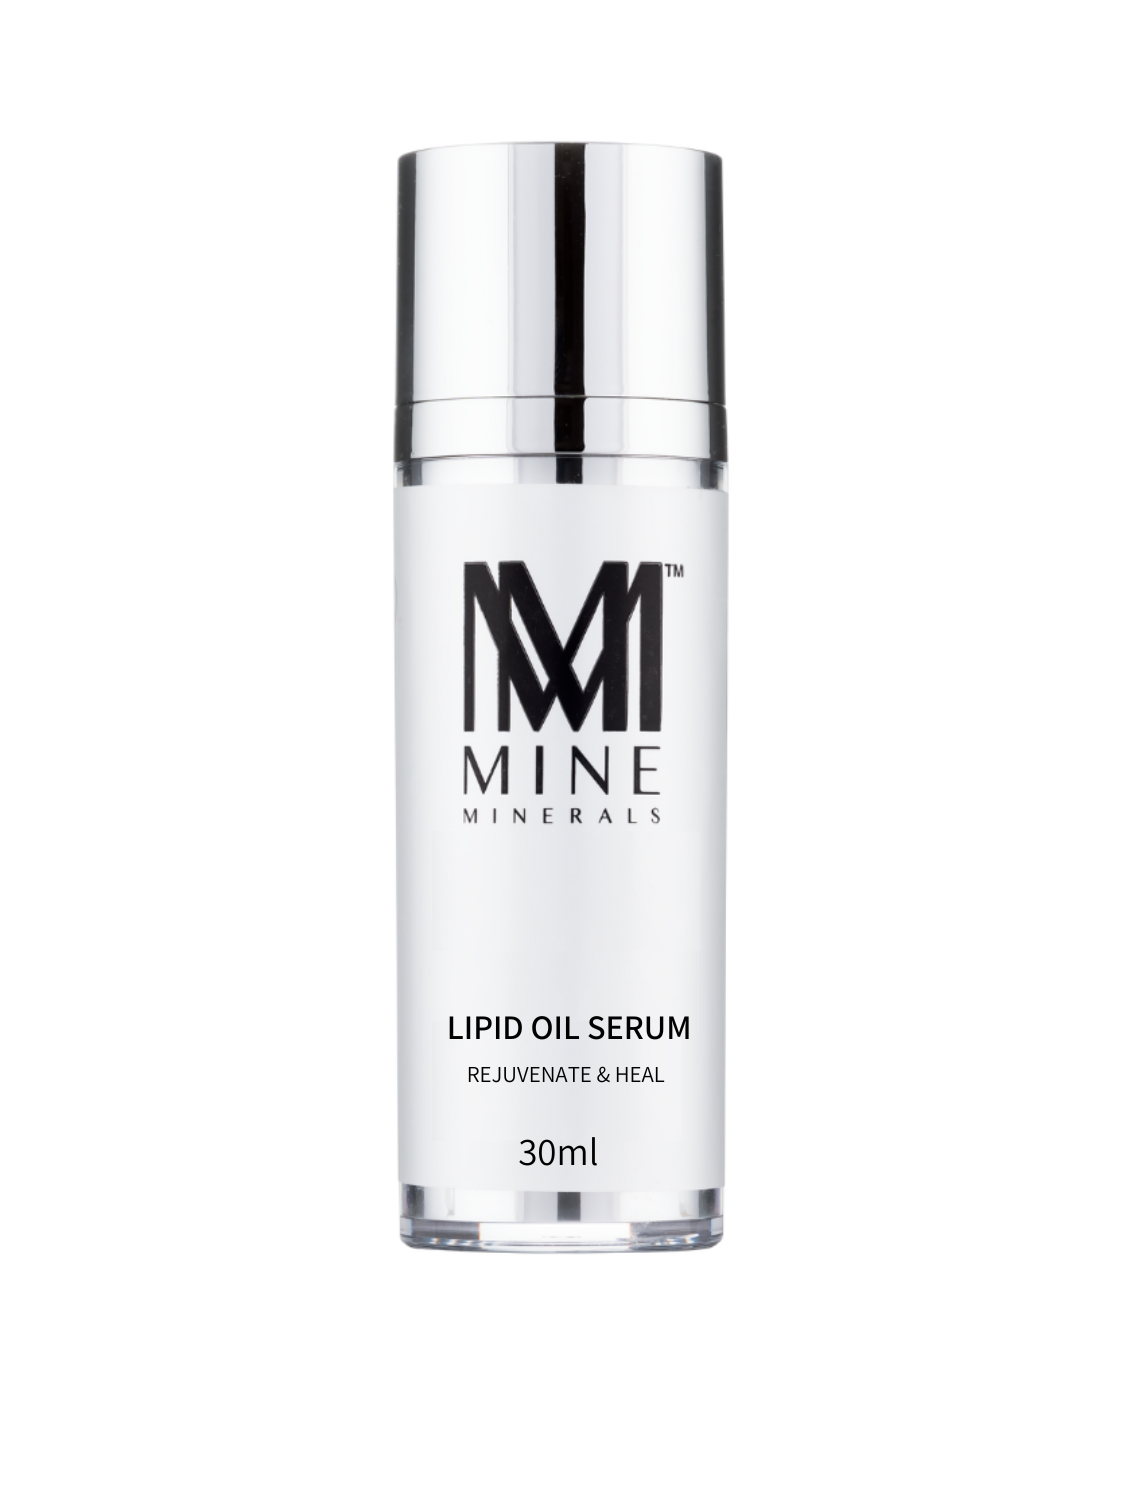 Lipid Oil Serum - 30ml - Mine Minerals